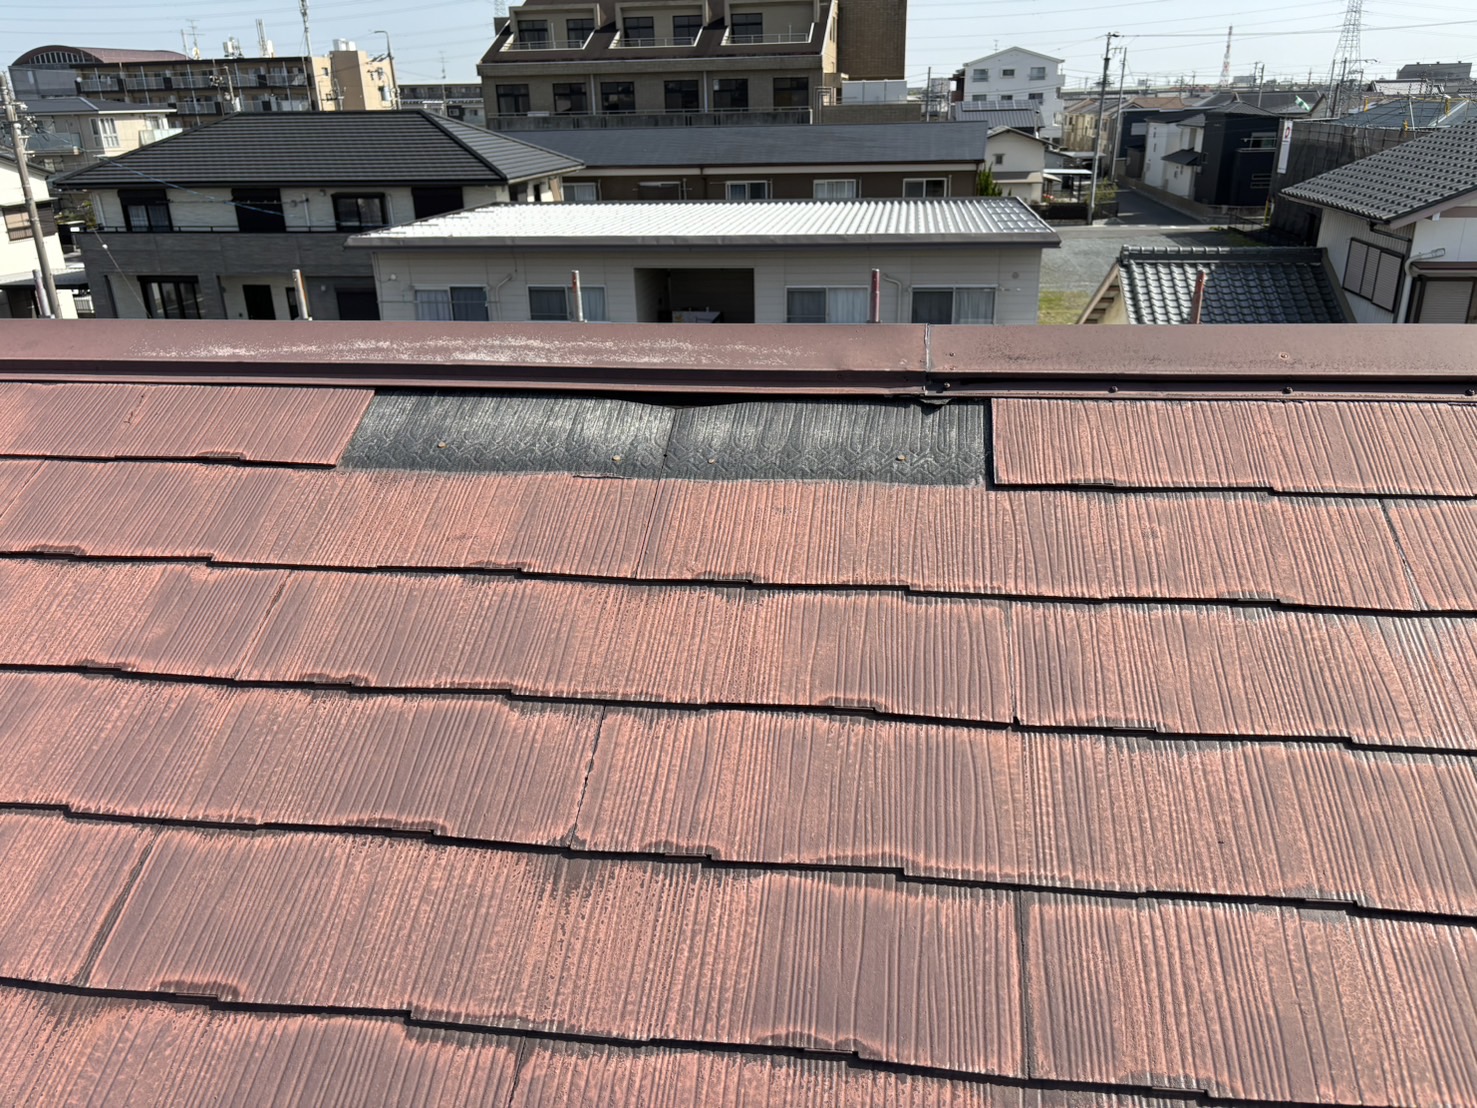 四日市市のアパート「ミサワホーム」のスレート屋根材ひび割れ状況四日市市のアパート「ミサワホーム」のスレート屋根材の劣化で一部剥がれた状態